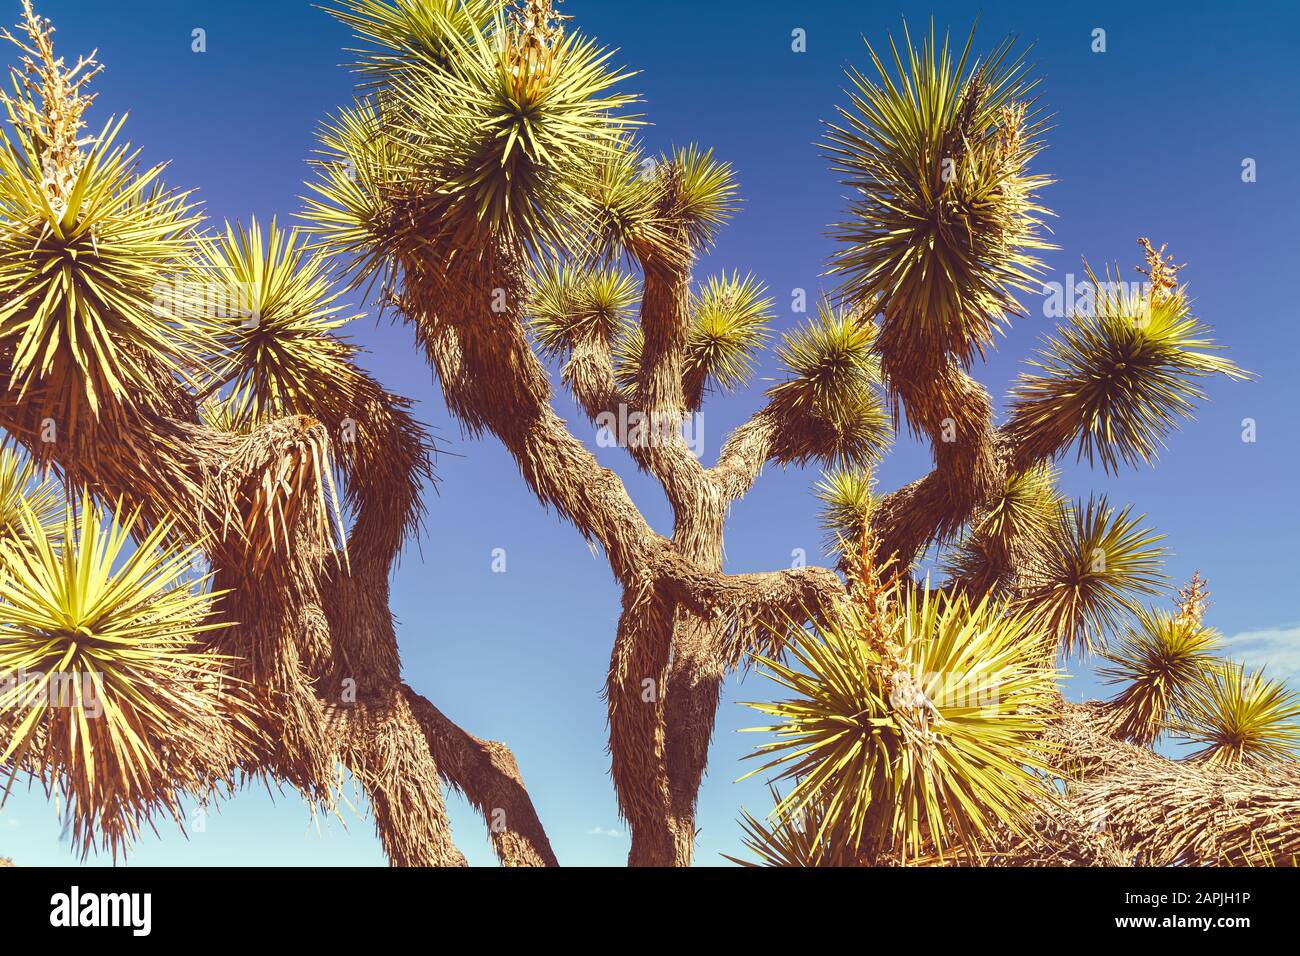 Schließen Sie sich an einem Joshua-Baum, Yucca Brevifolia, Joshua Tree National Park, Kalifornien, Vereinigte Staaten. Stockfoto